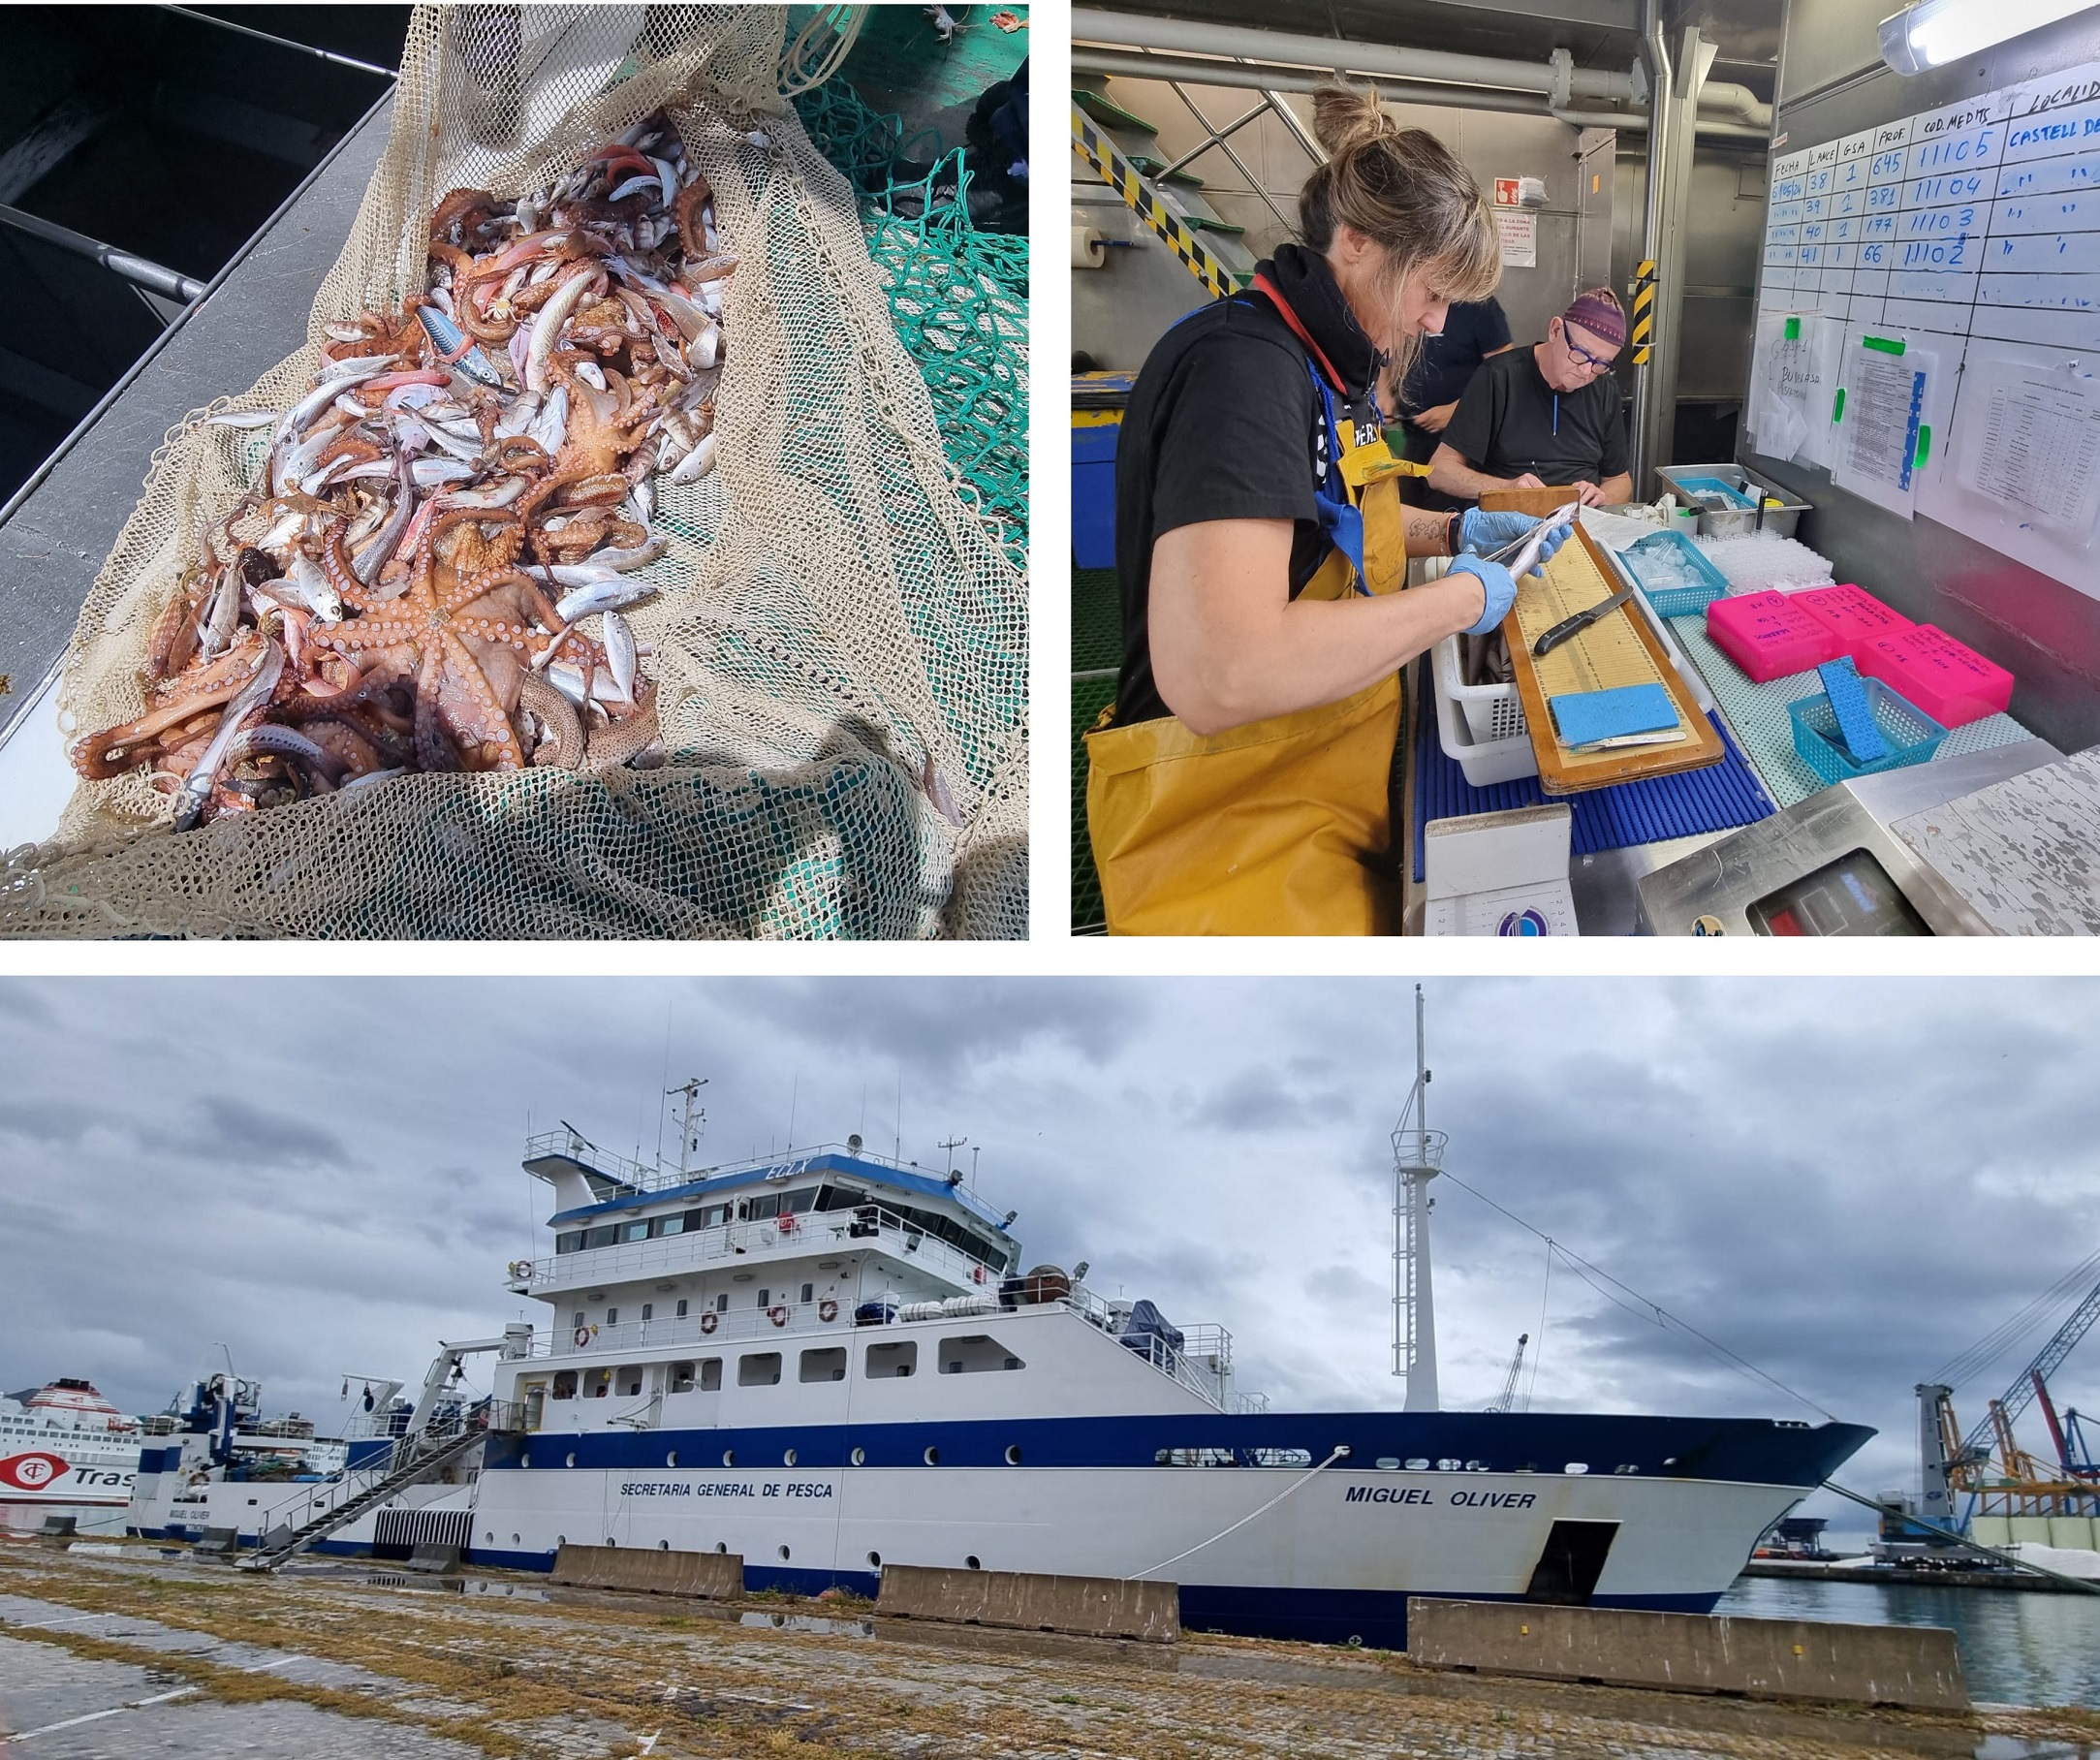 A bordo del buque Miguel Oliver el equipo científico trabaja para estimar la abundancia y estructura poblacional de las especies objetivo de la pesquería de arrastre del Mediterráneo.